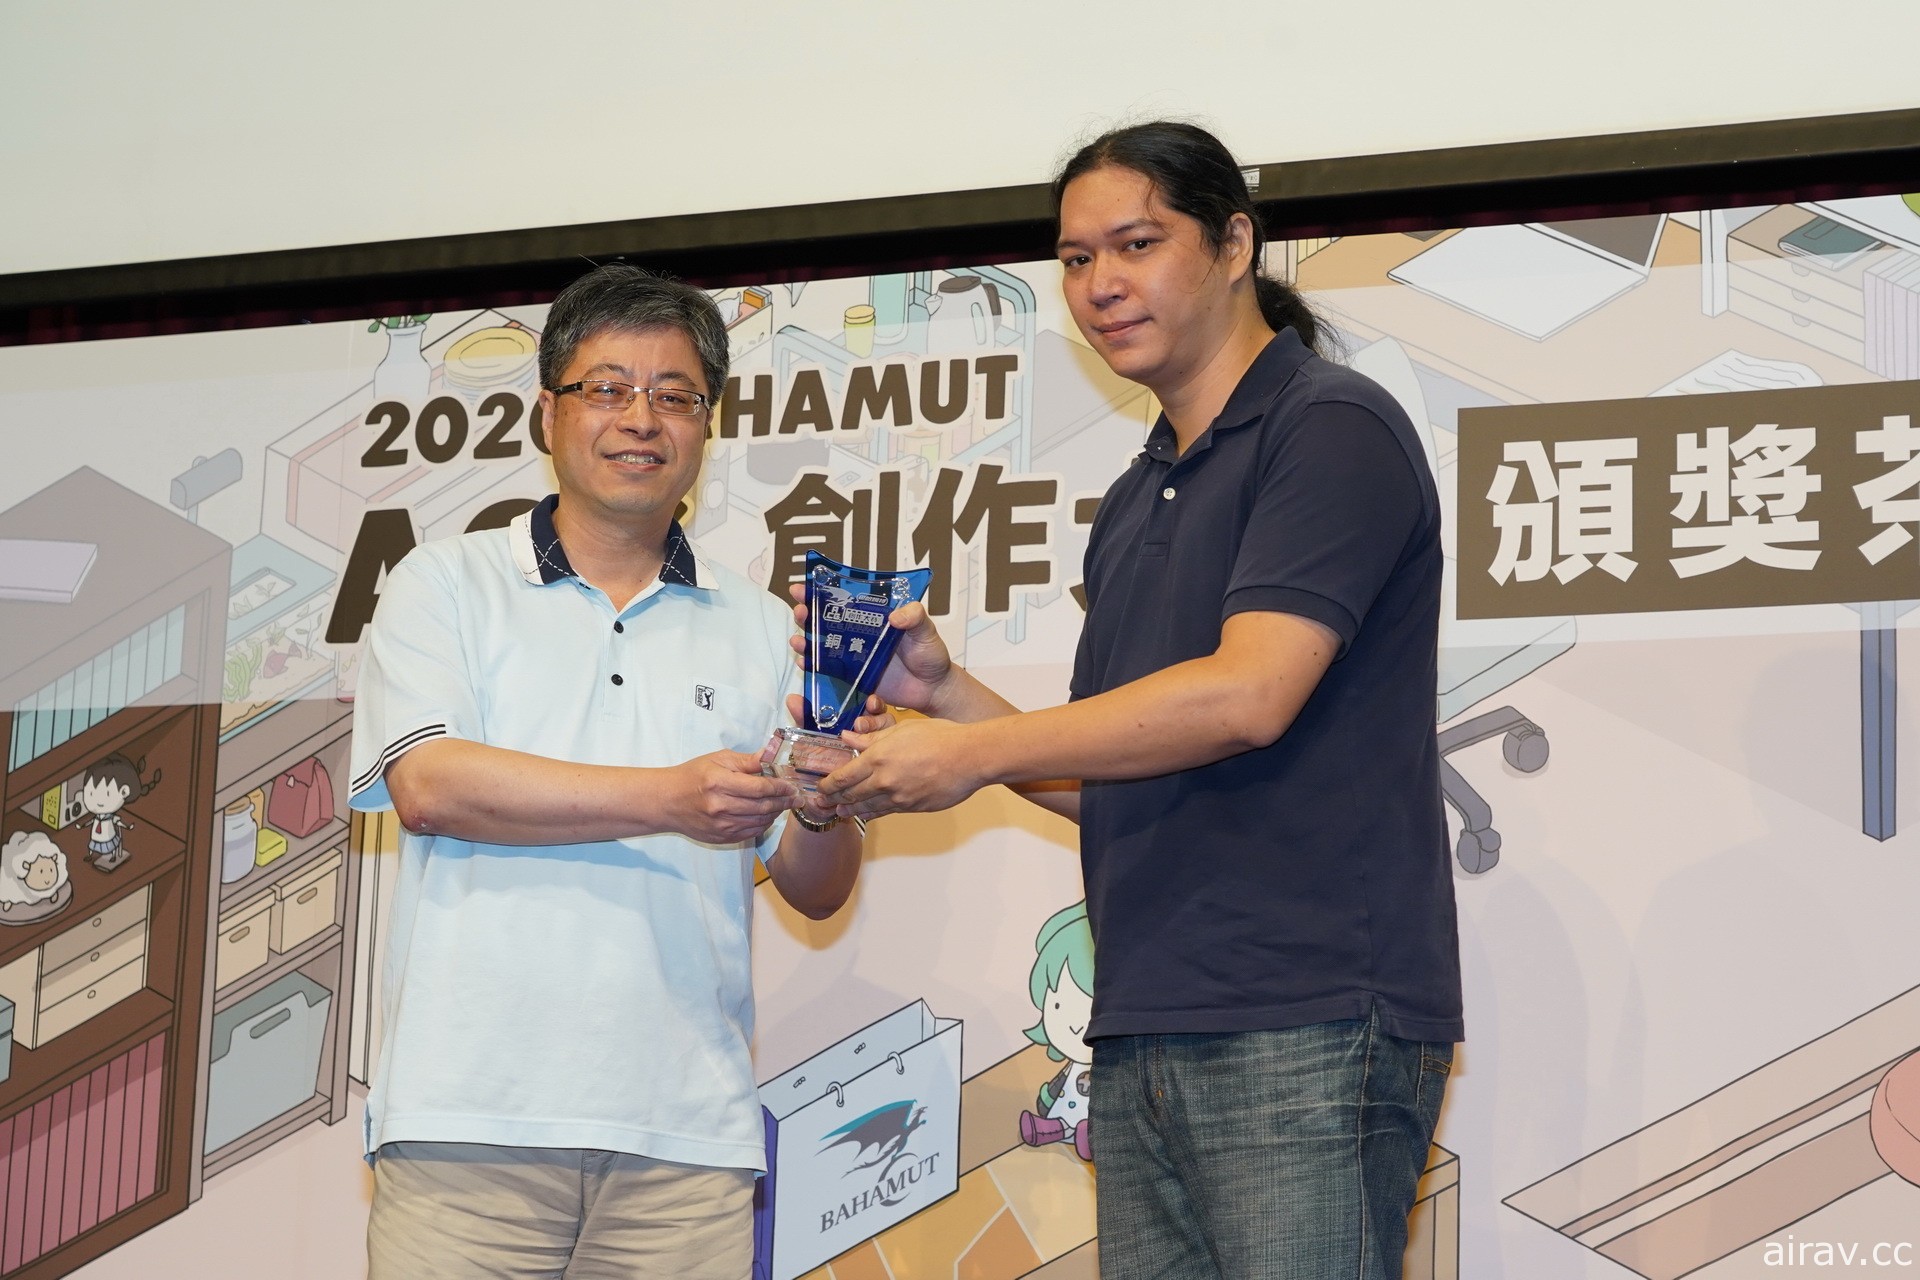 巴哈姆特 2020 ACG 創作大賽「遊戲組」揭曉得獎名單 《文字遊戲》獲得金賞